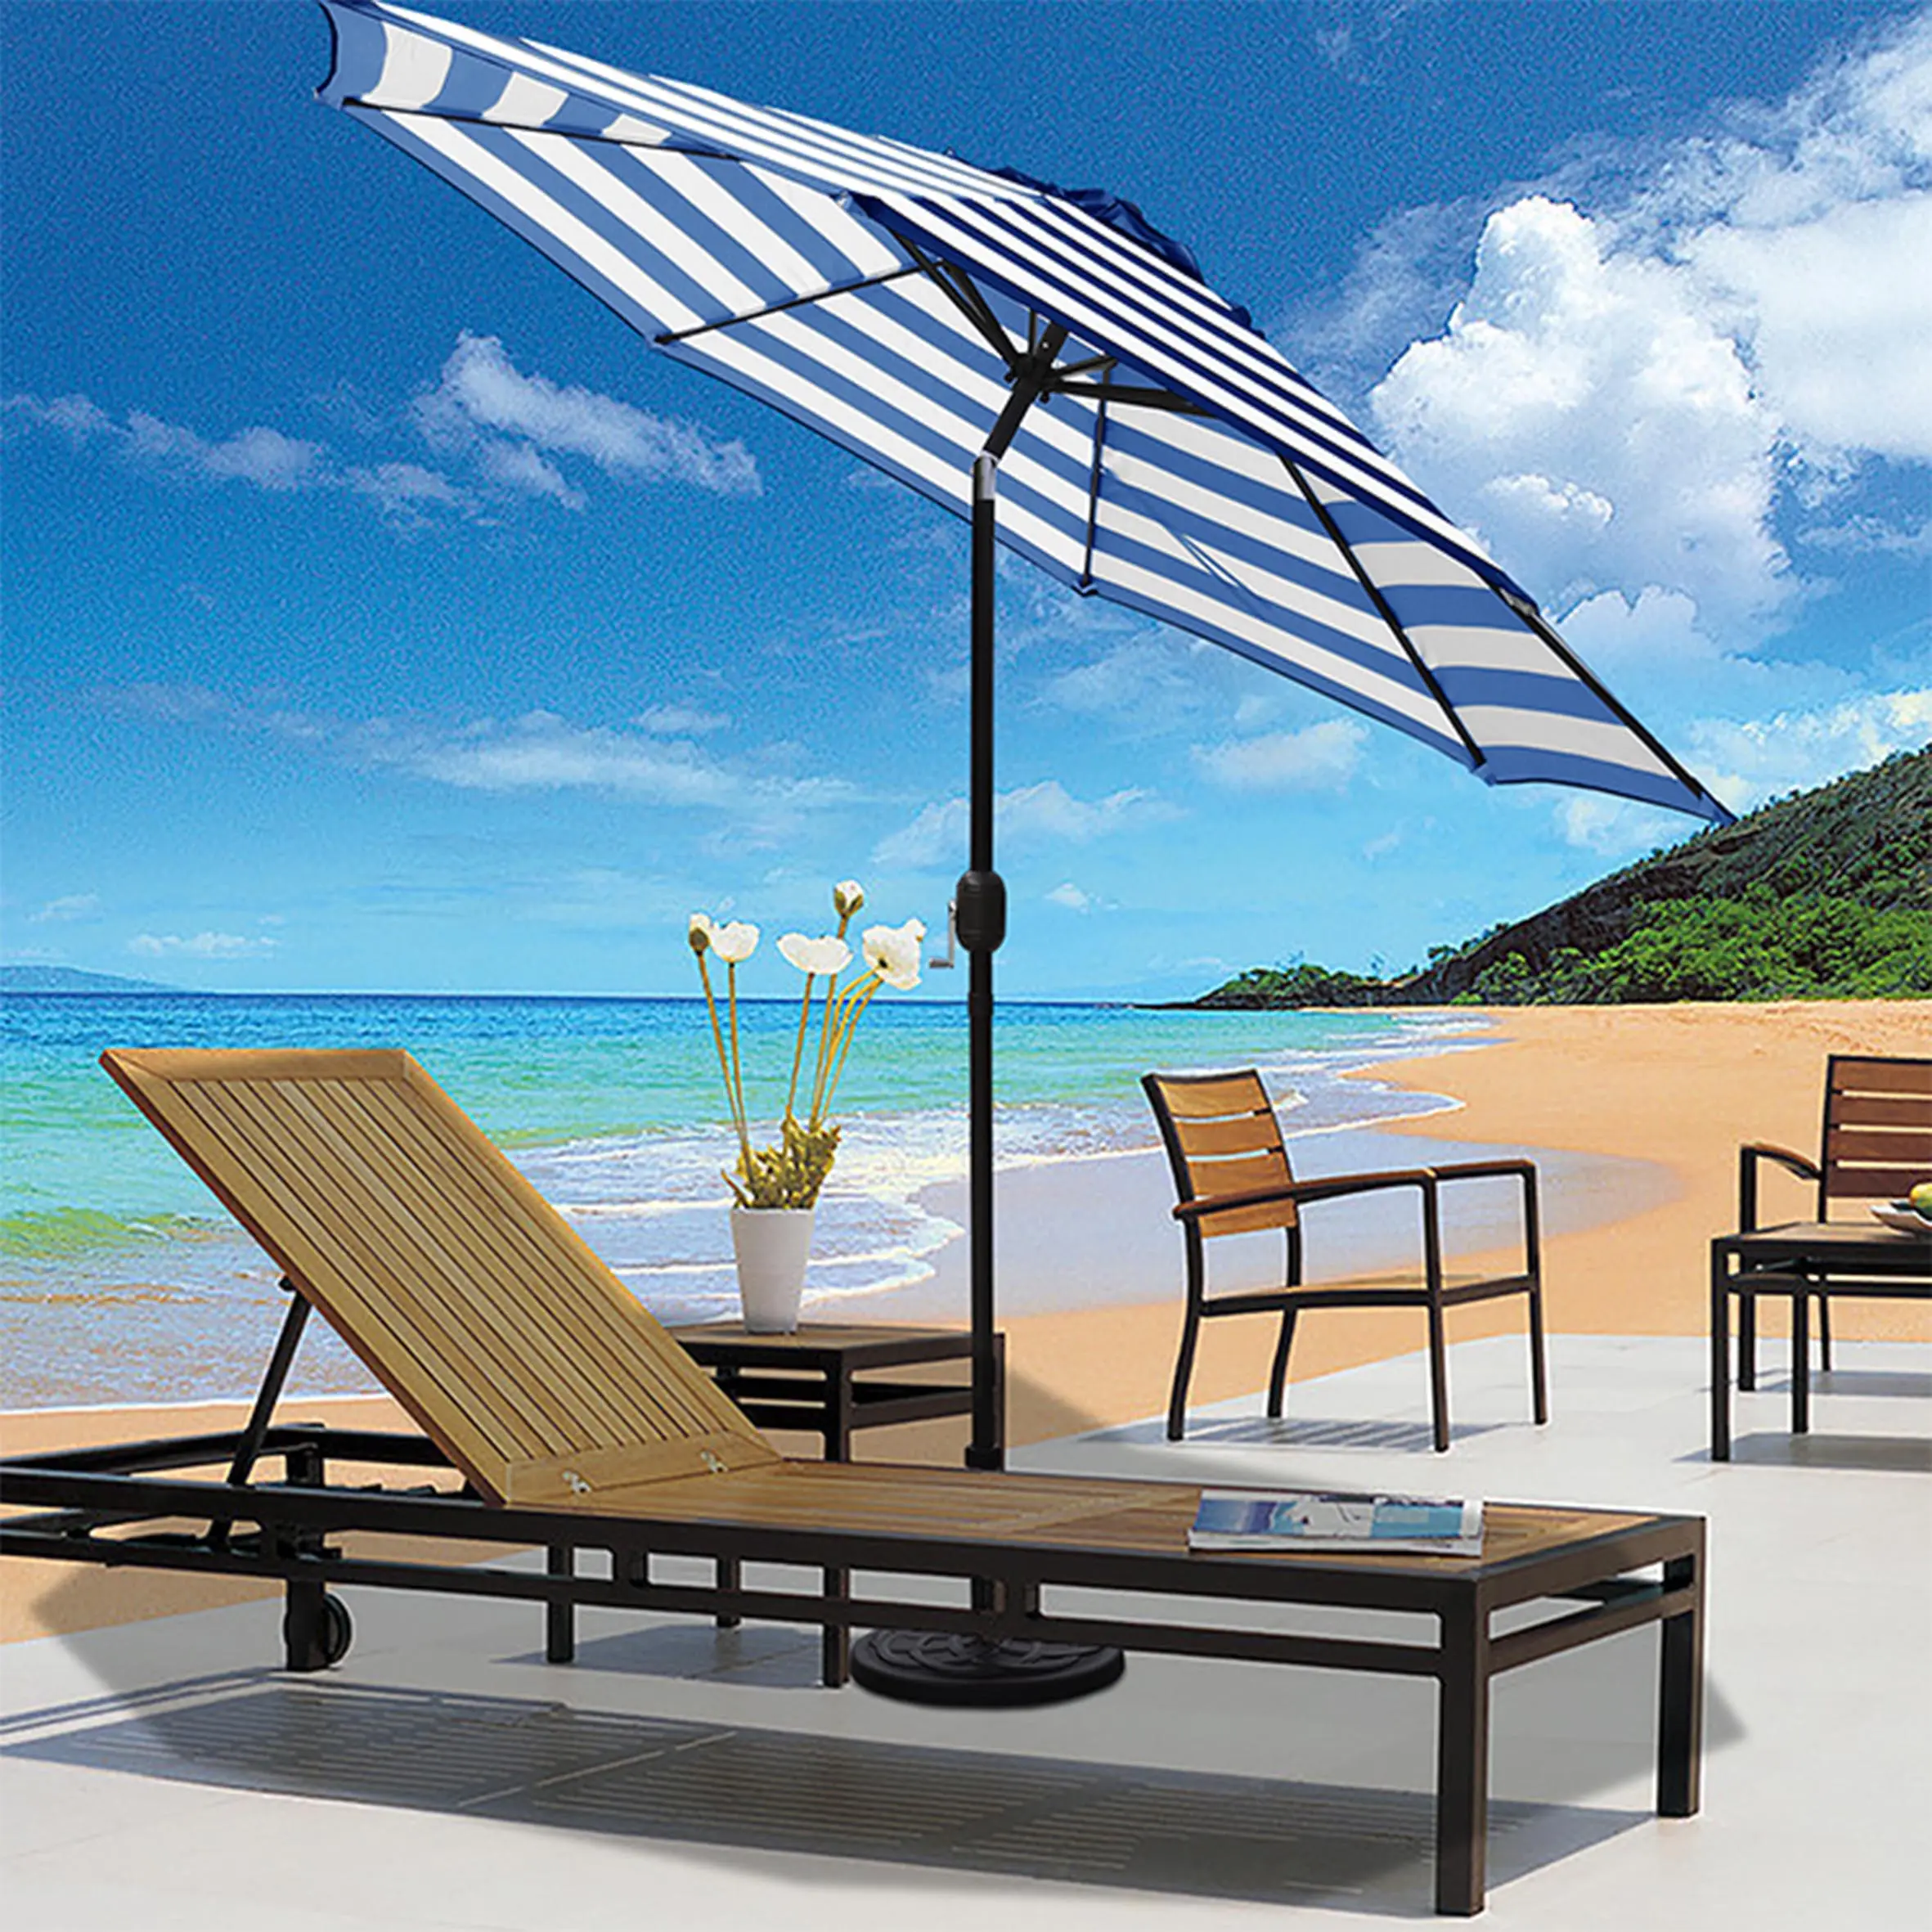 Grande ombrellone quadrato esterno spiaggia pannello solare giardino esterno ombrellone ombrellone grande 3M 4M 5M giardino ombrelloni ombrelloni